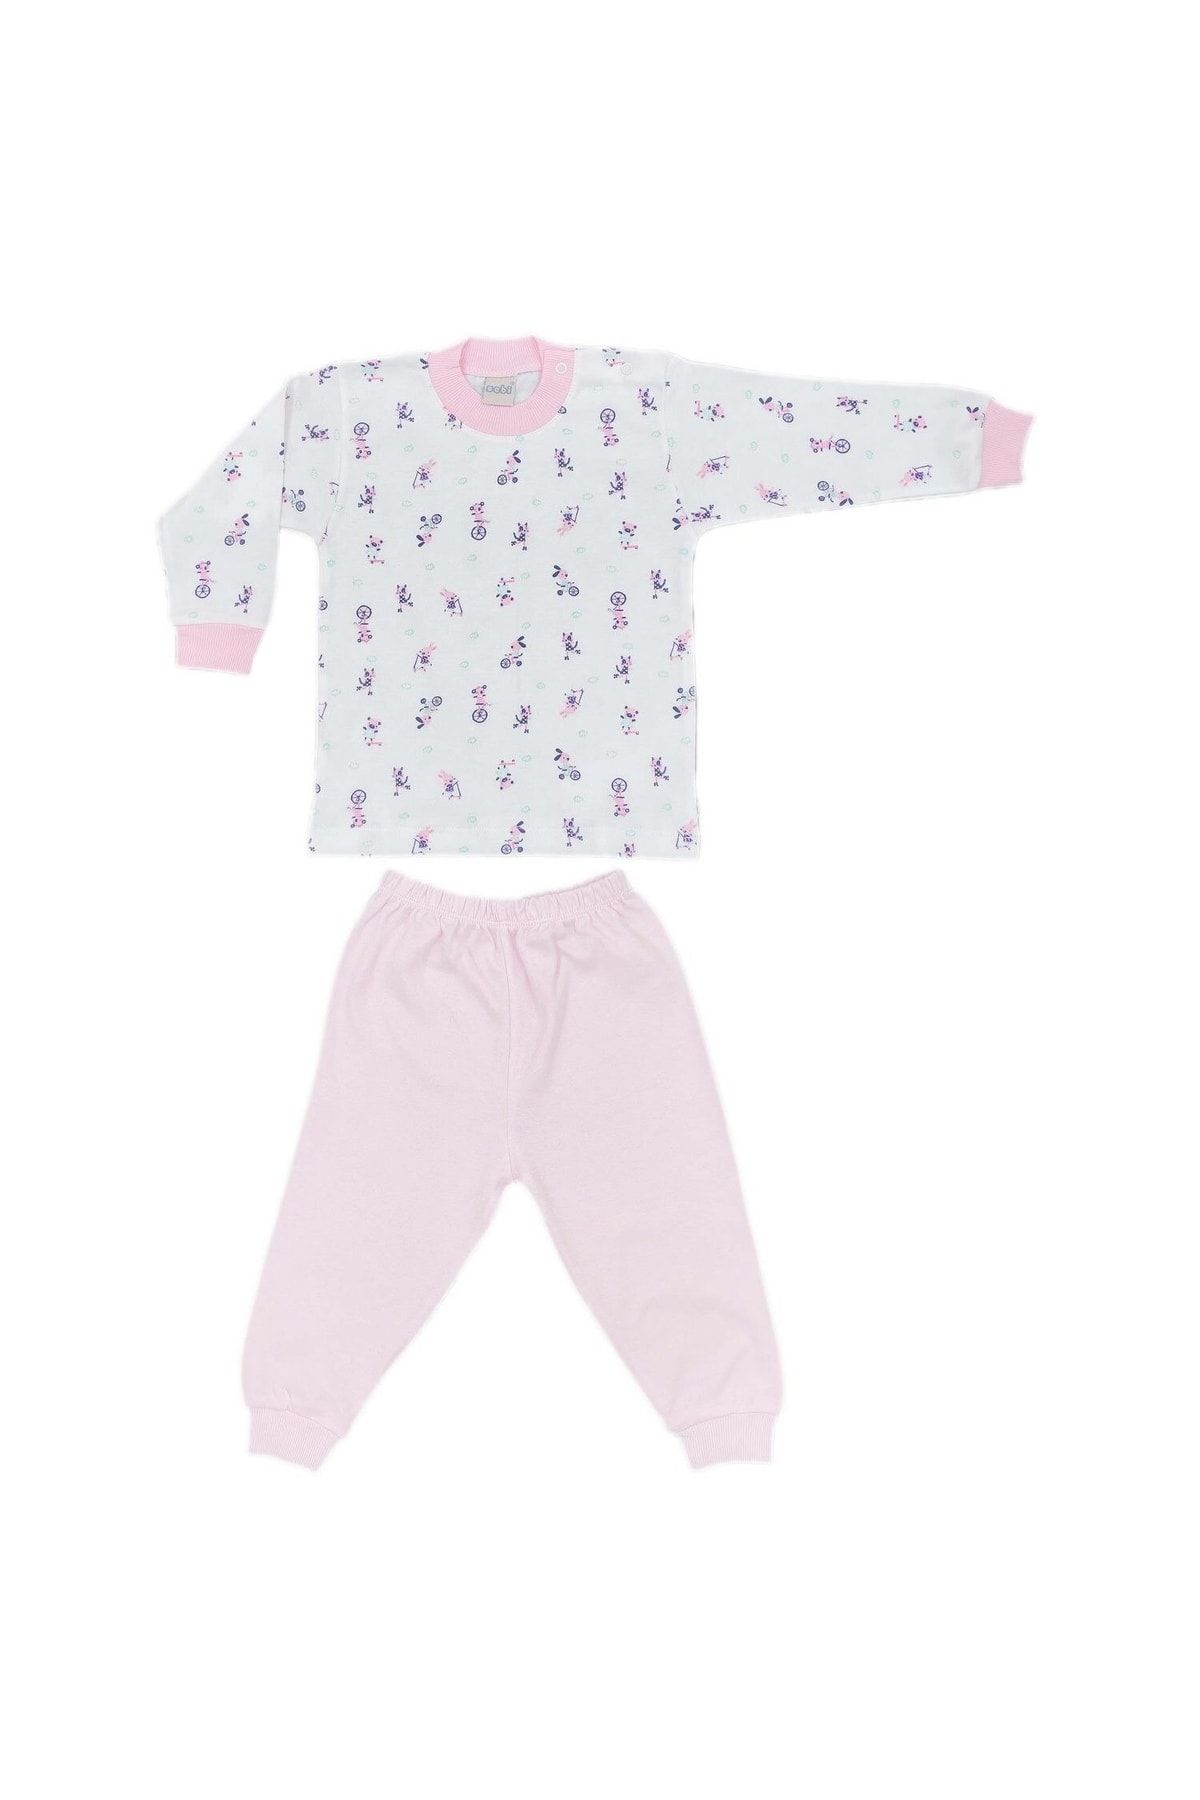 Sebi Bebe Bebe Bisikletli Bebek Pijama Takımı 2218